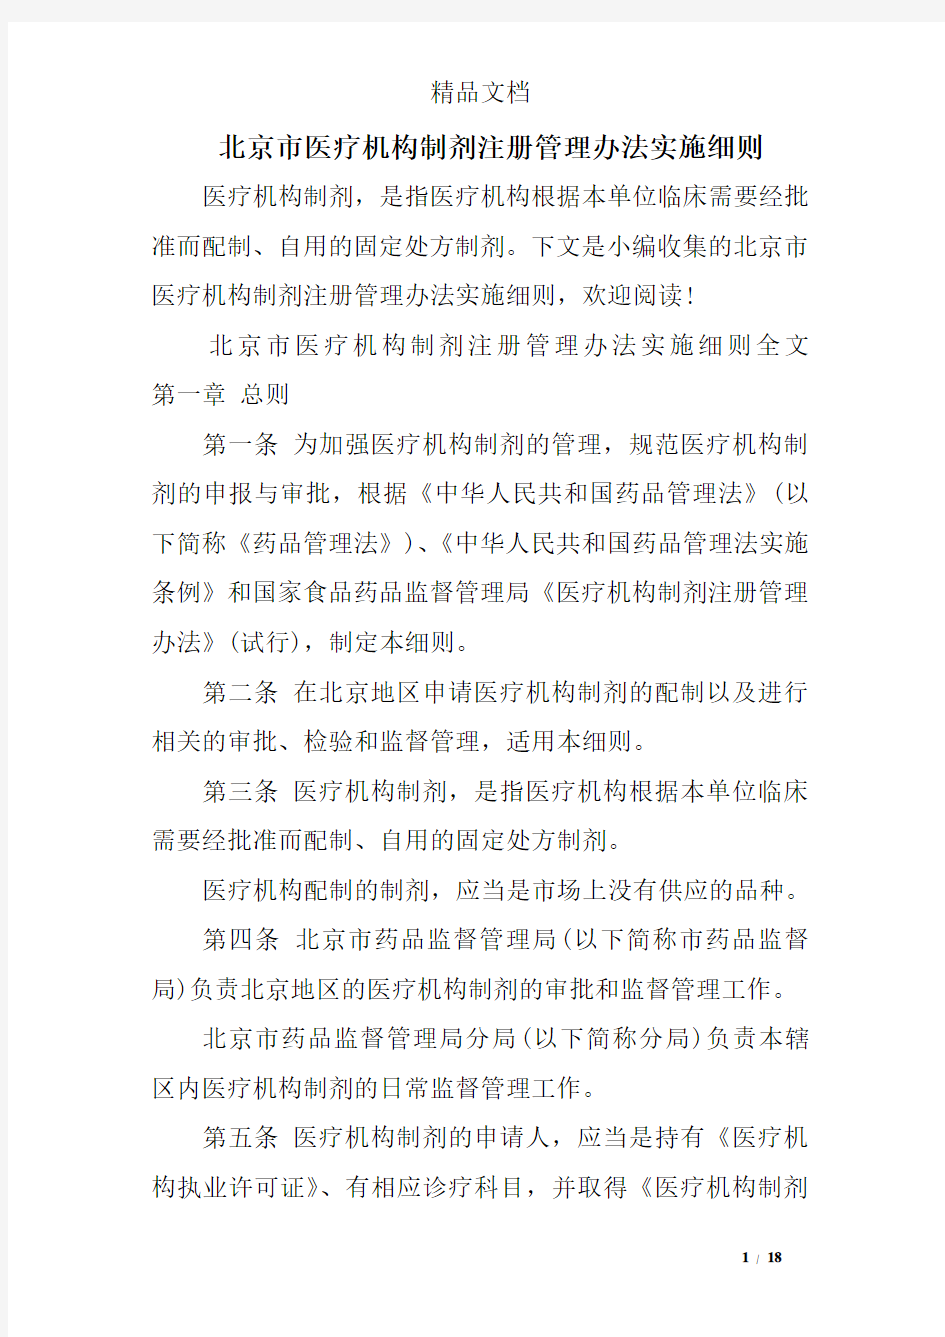 北京市医疗机构制剂注册管理办法实施细则